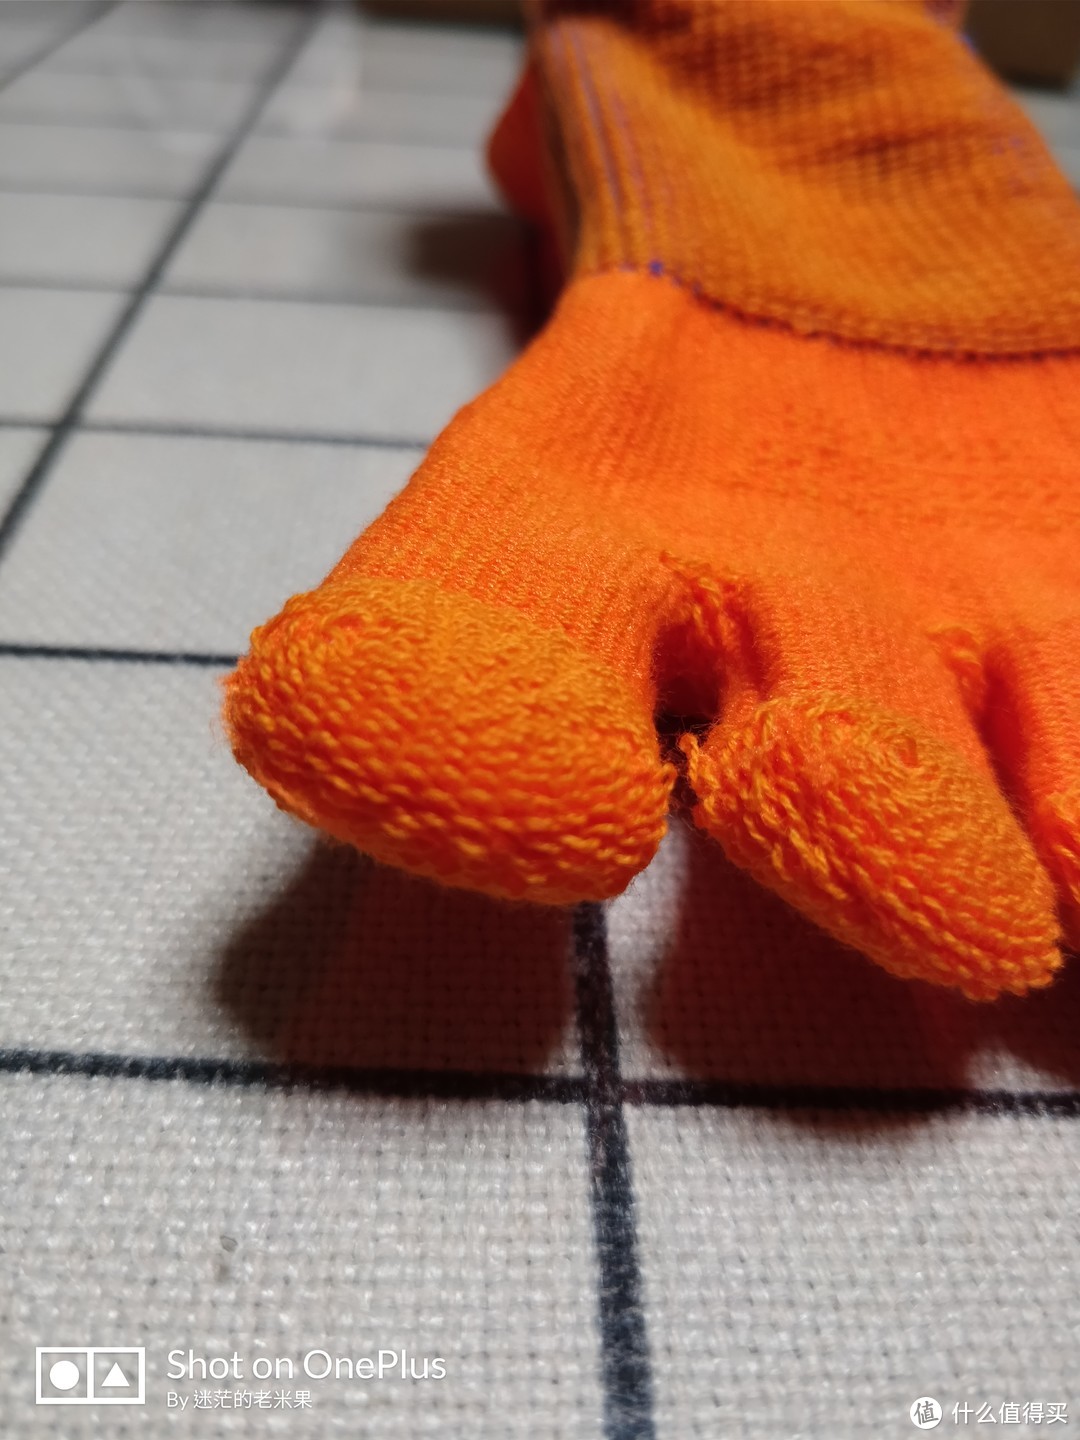 一双穿着舒服但又舍不得买的袜子---GEARLAB燃烧装备实验室3D压力五指袜小体验